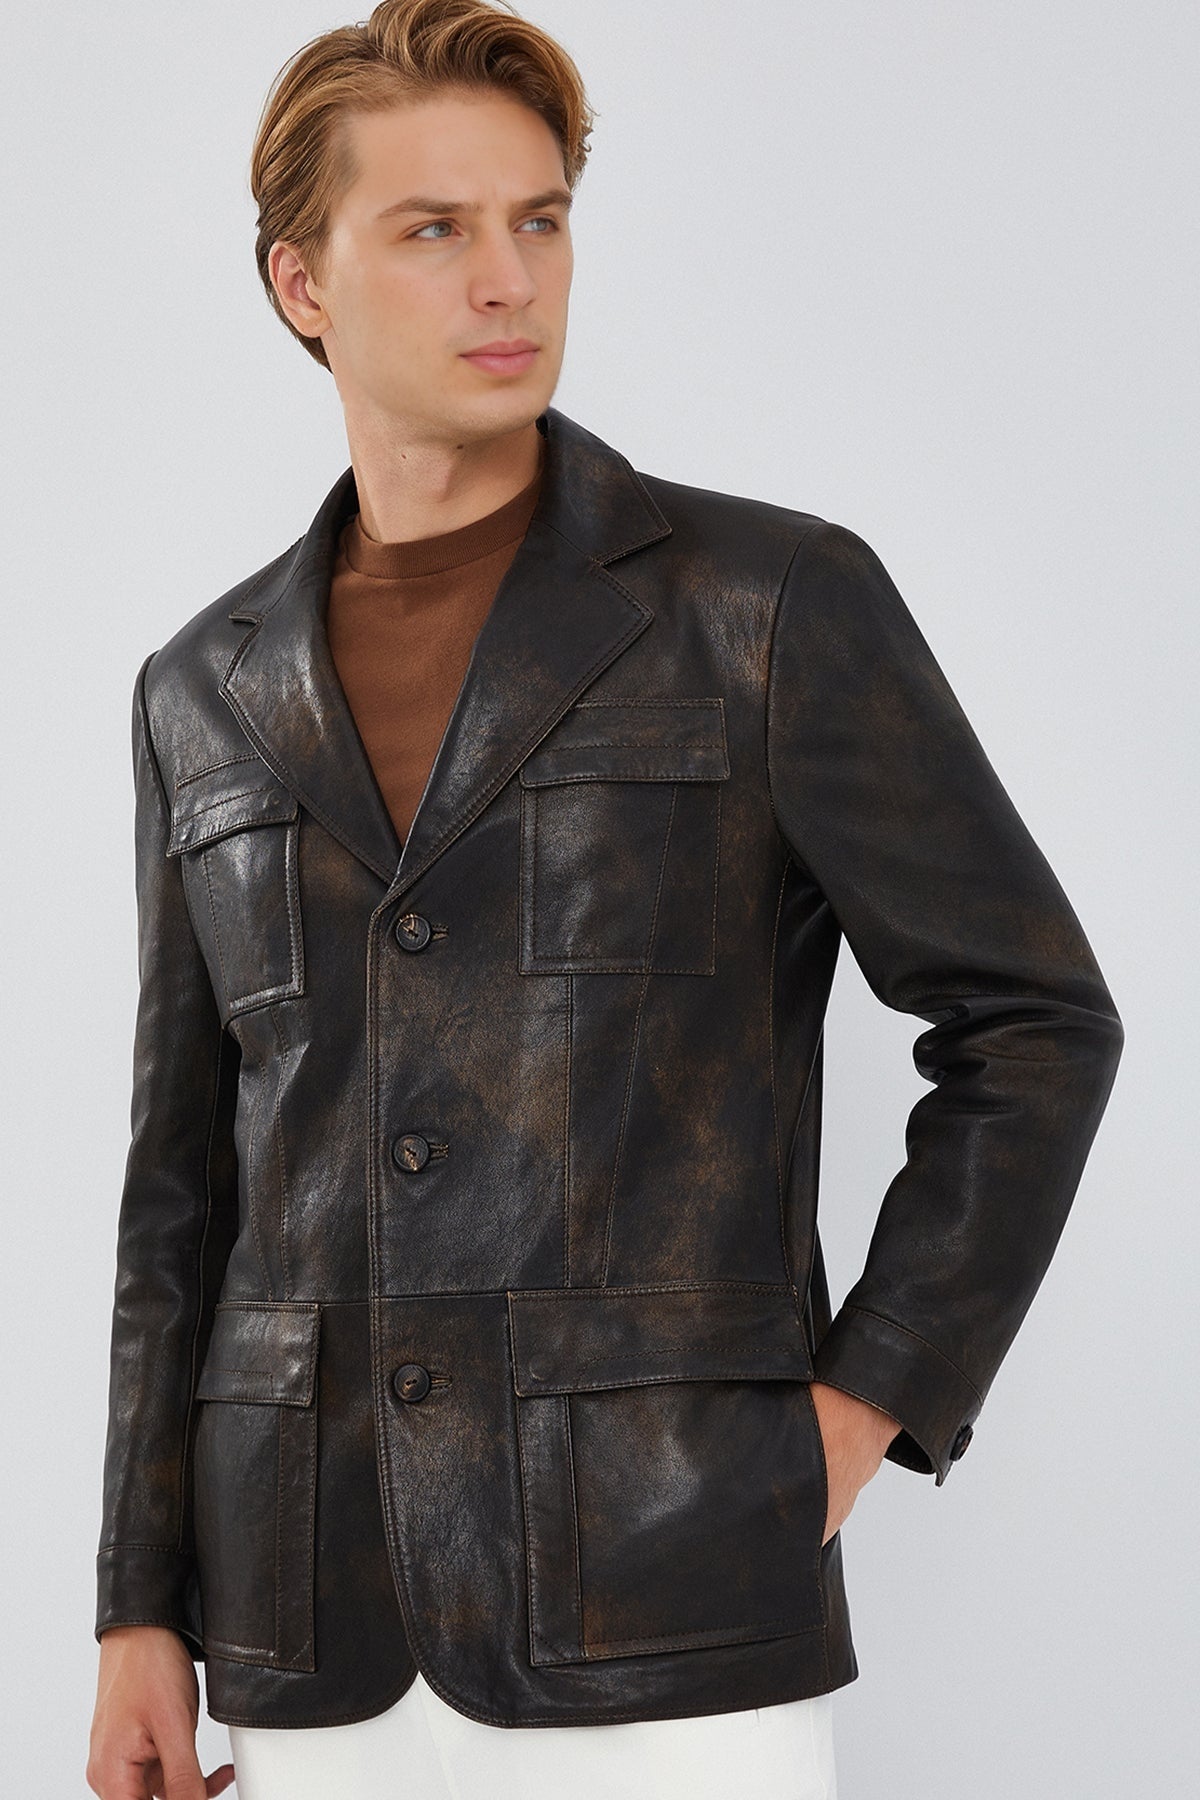 Kane Men's Brown Leather Jacket